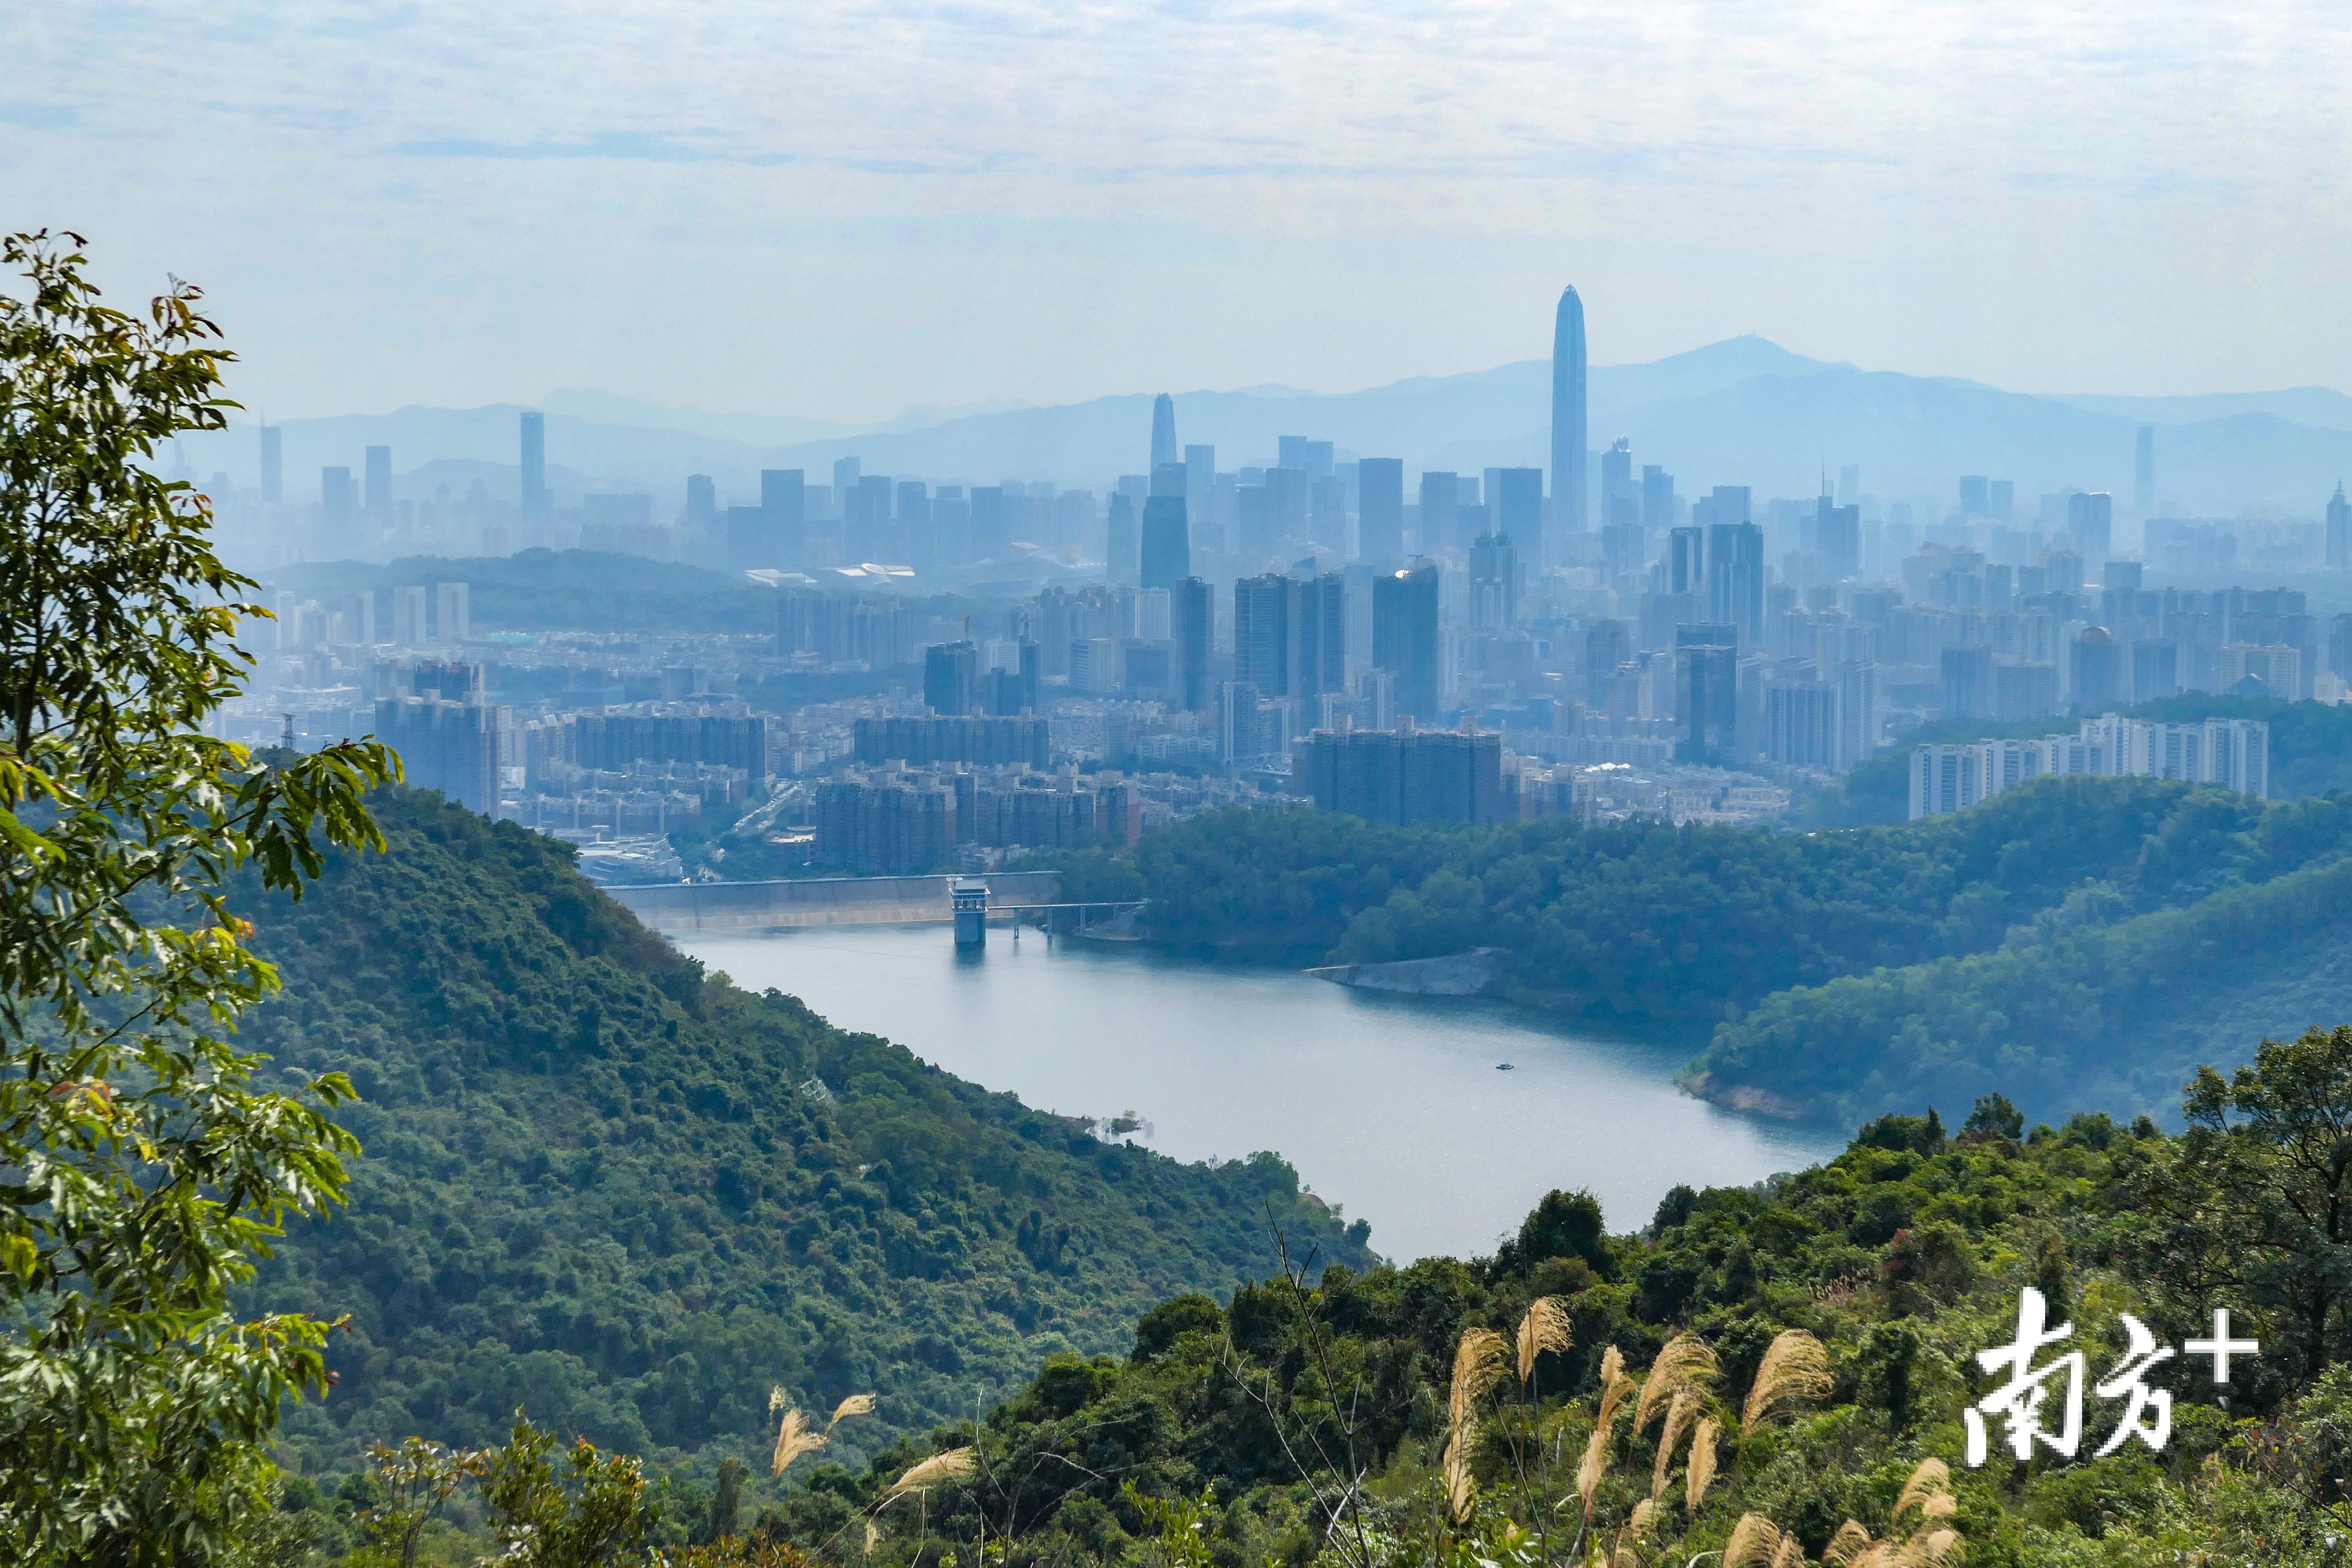 深圳郊野径让城市回归自然。